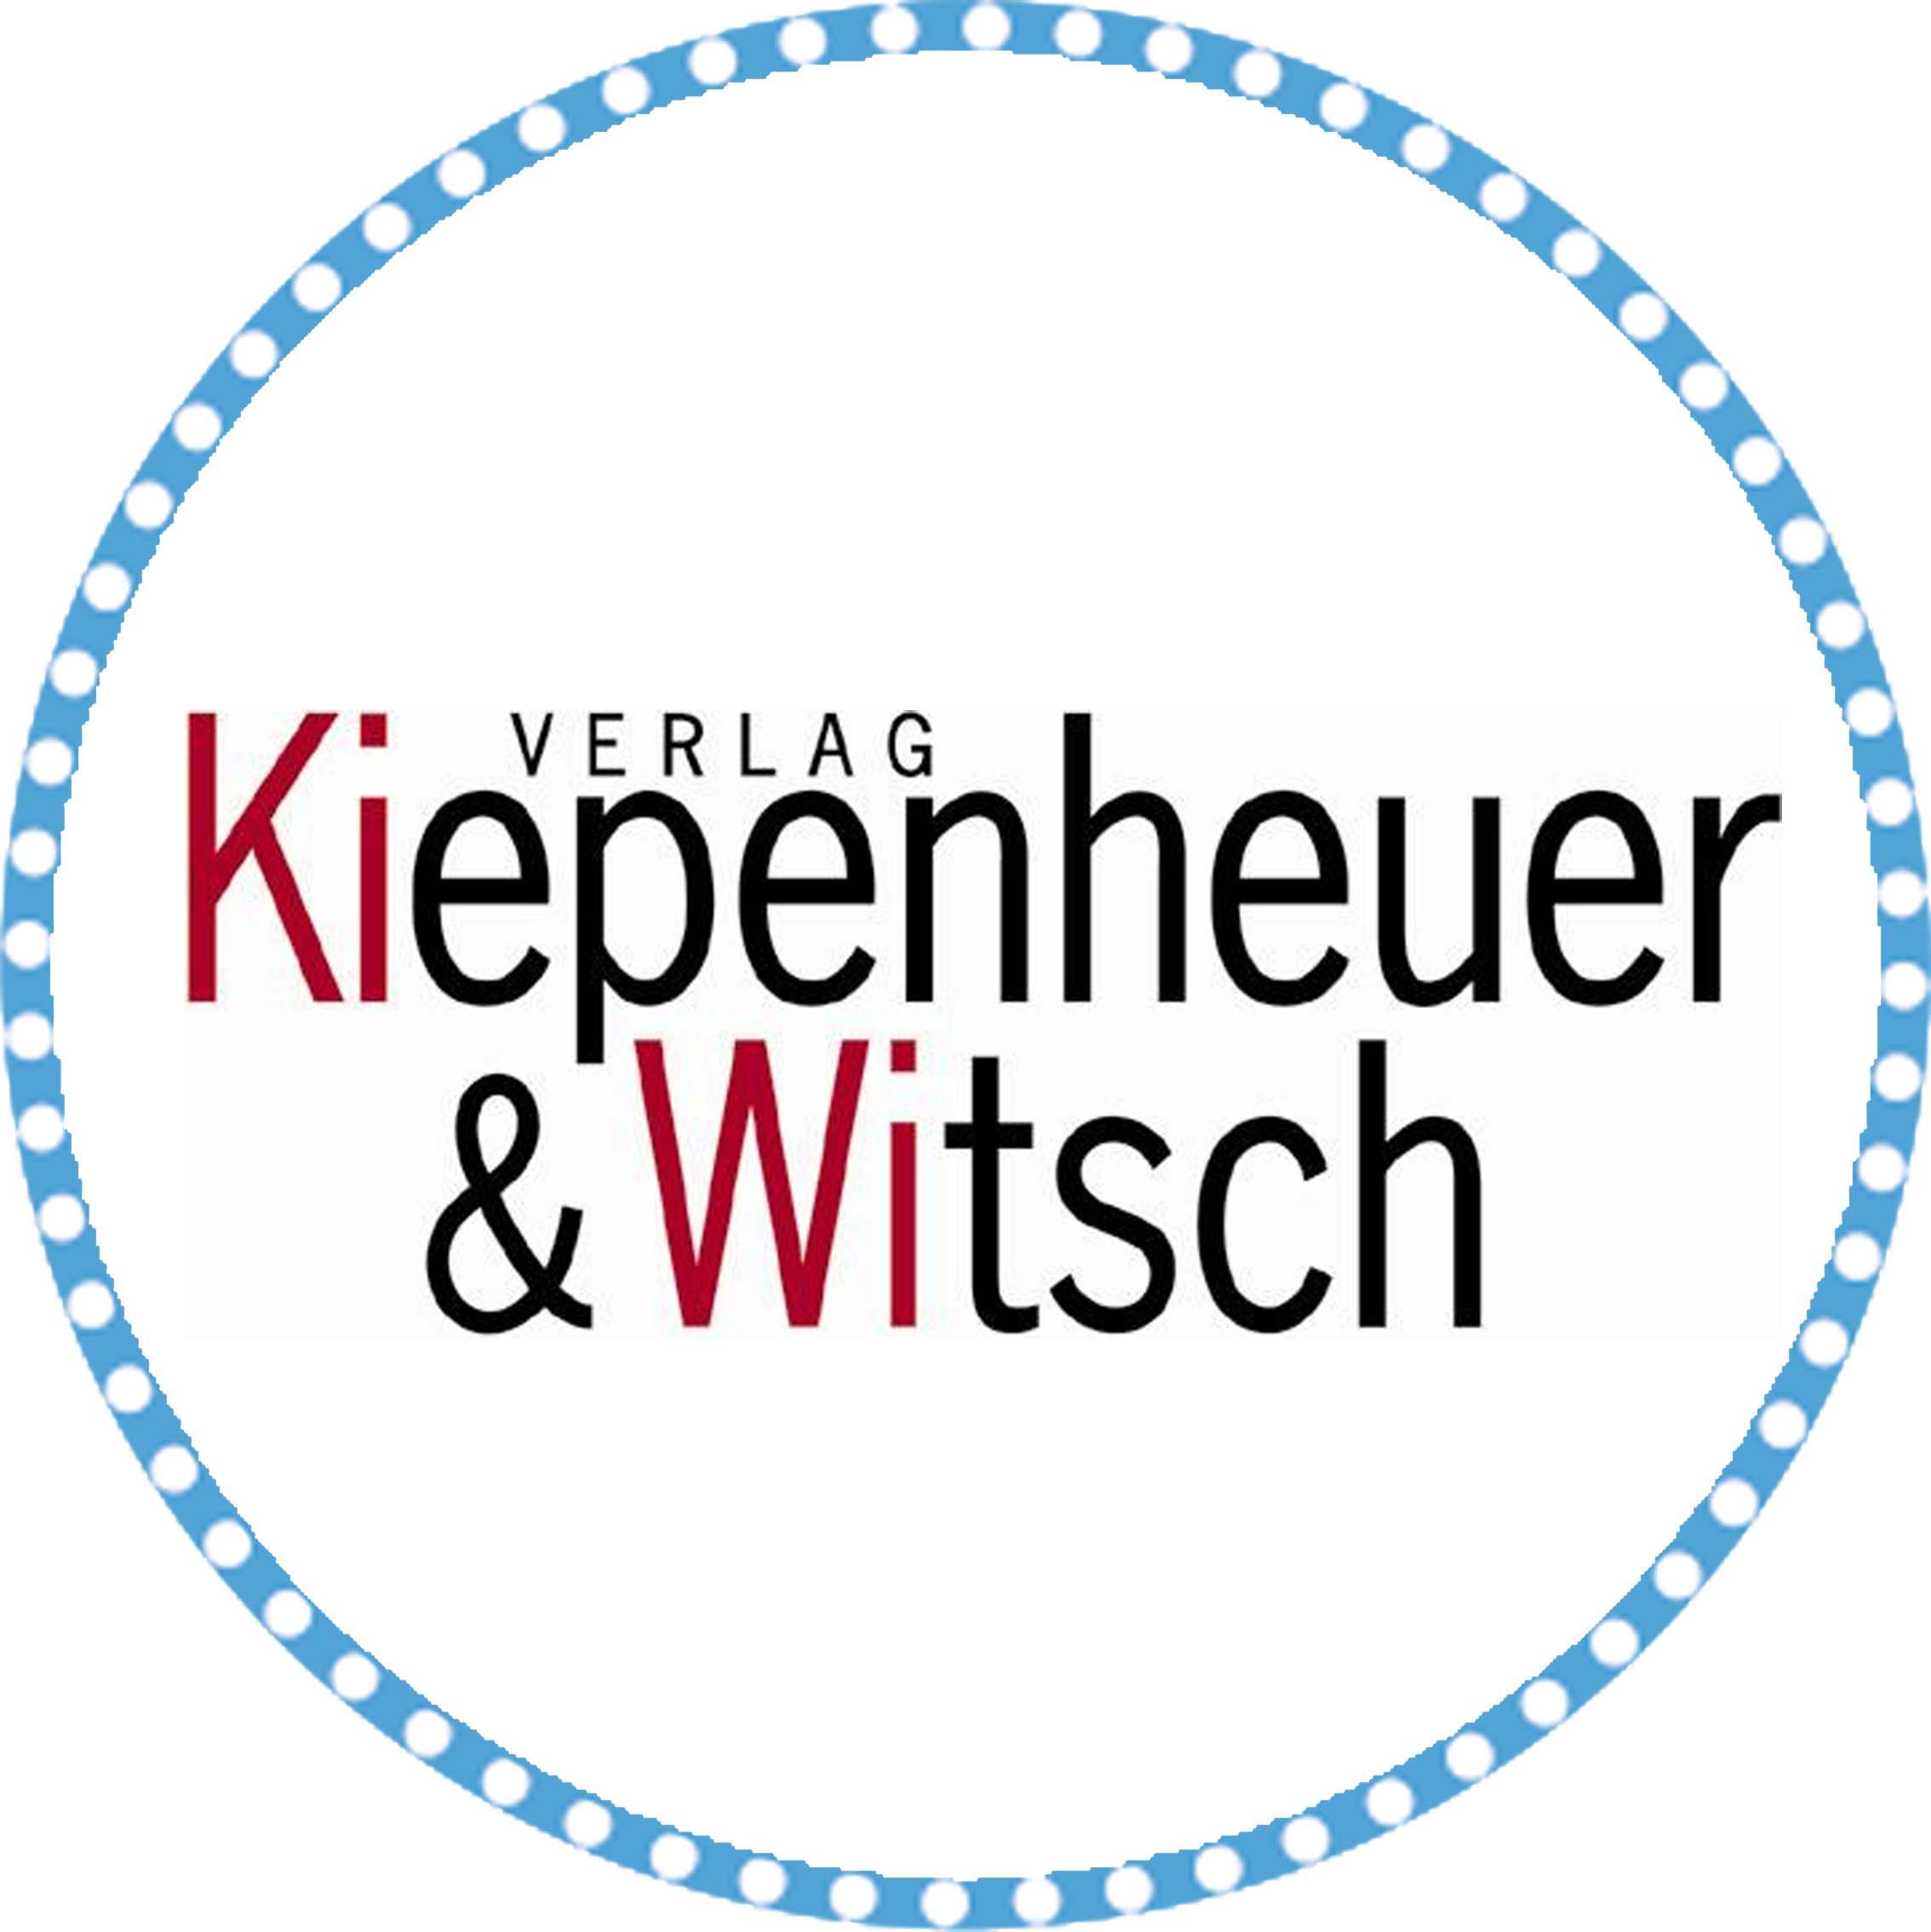 Das Lektorat vom Verlag Kiepenheuer & Witsch sucht bei neobooks nach neuen Talenten!